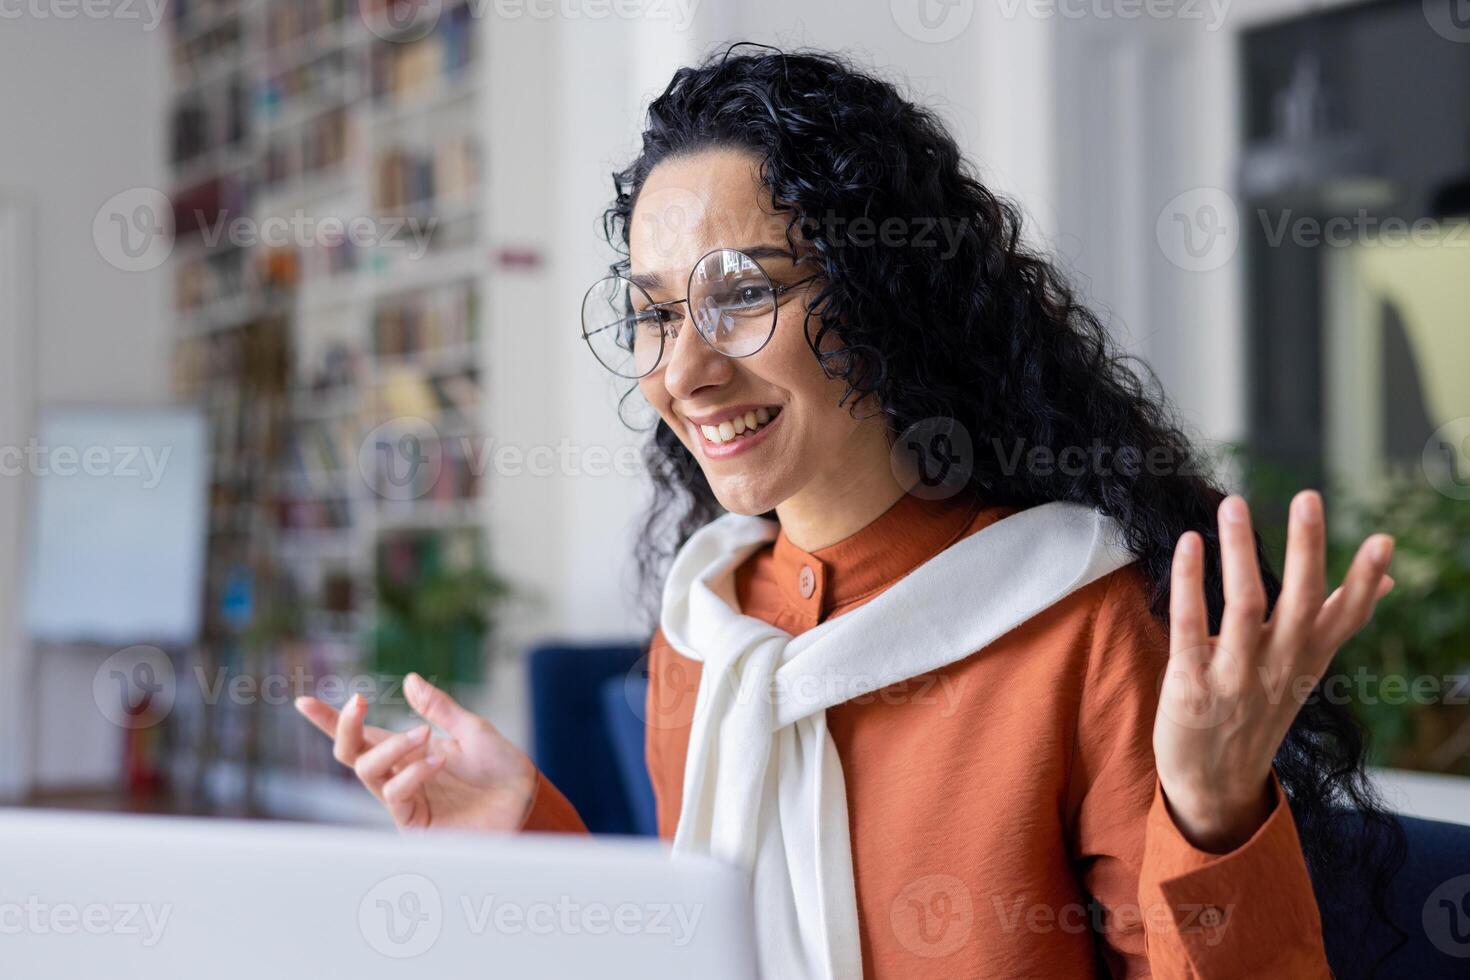 jovem hispânico mulher falando em ligar estudando dentro universidade acadêmico biblioteca, conectados aprendizado. foto